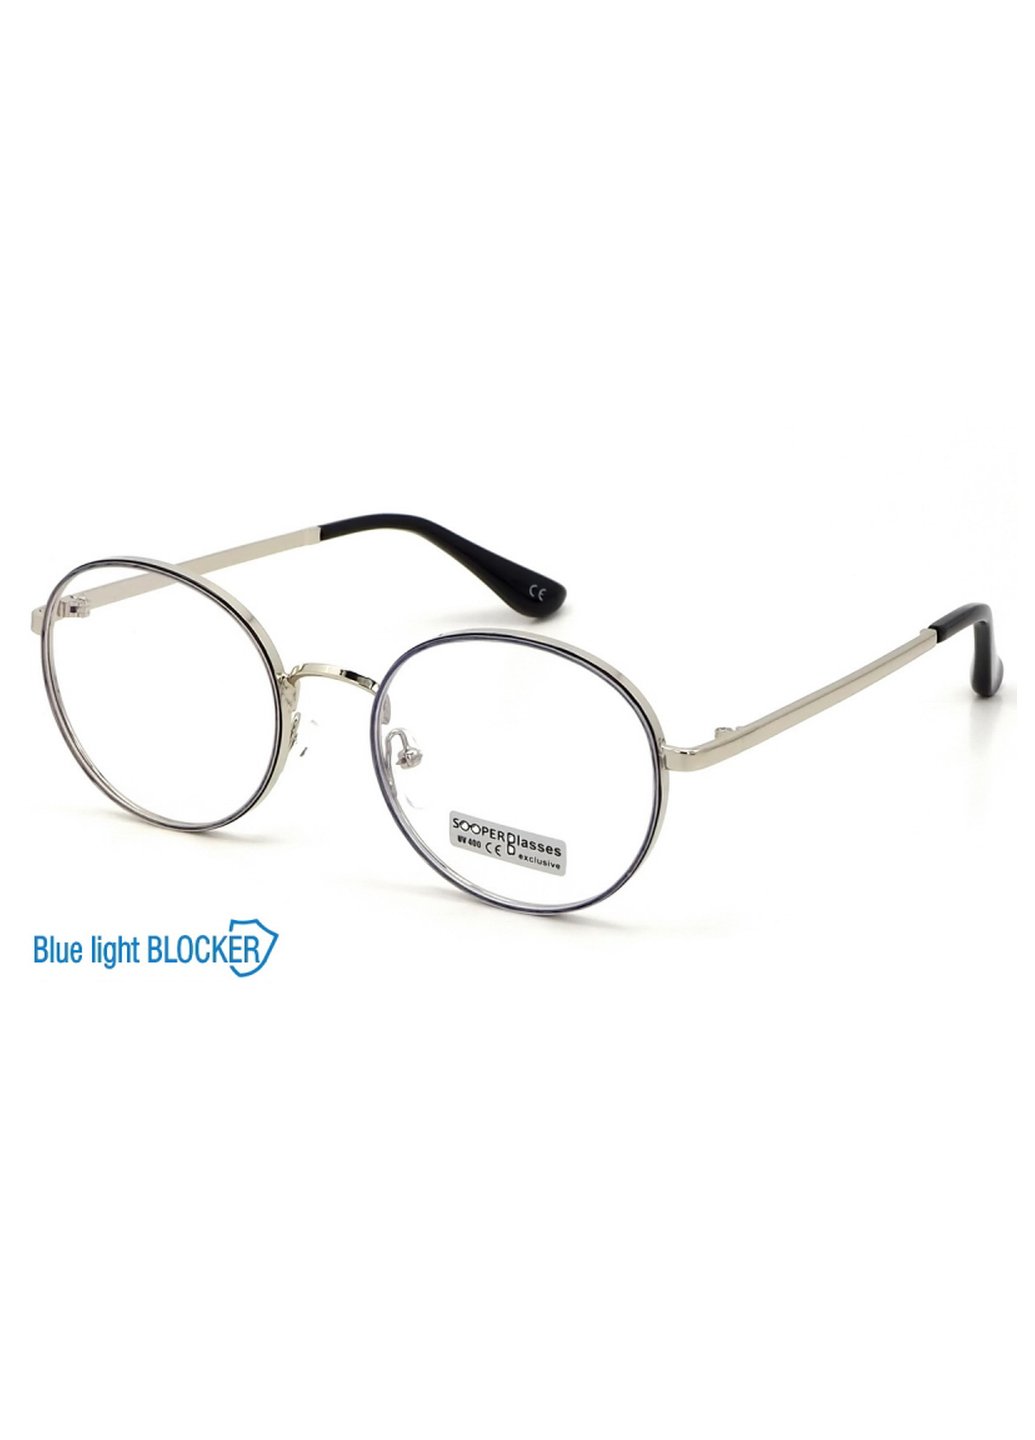 Купить Очки для работы за компьютером Cooper Glasses в серебристой оправе 124016 в интернет-магазине